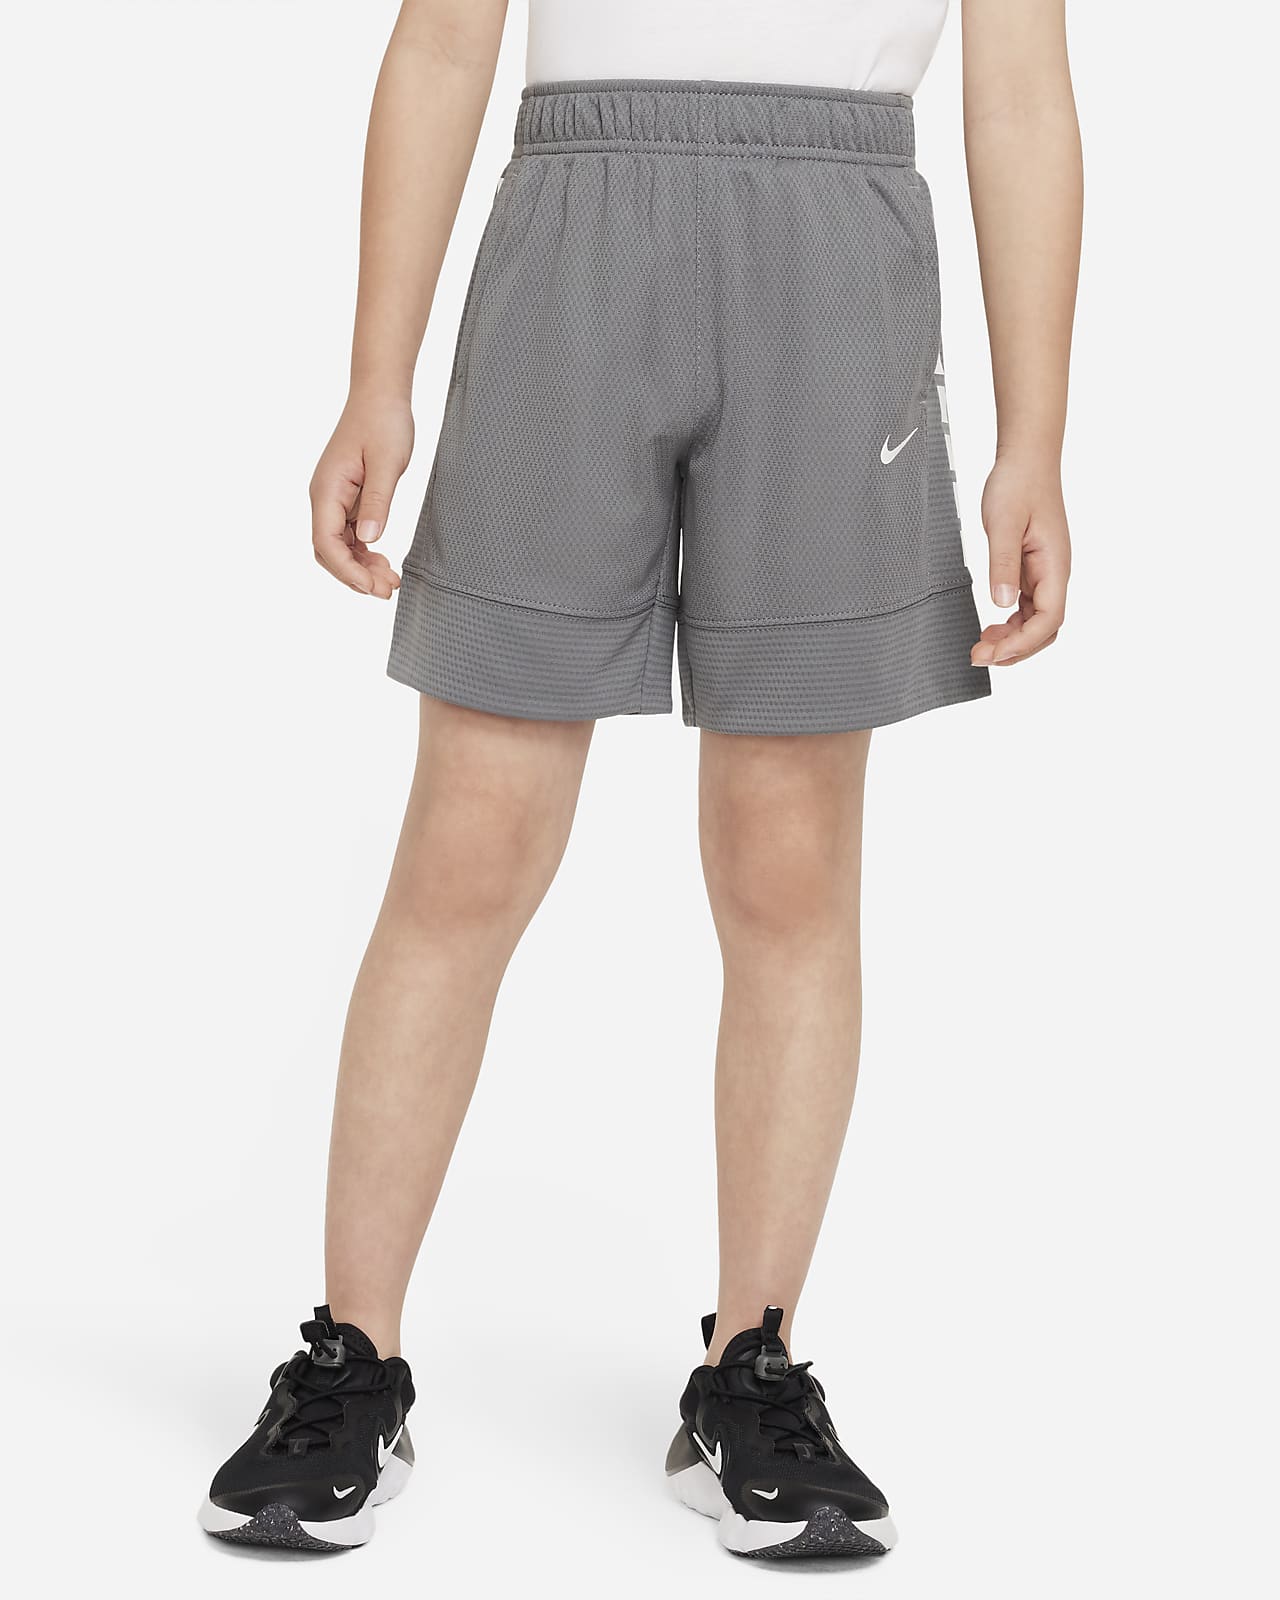 Nike Elite Shorts Little Kids Dri-FIT Shorts.